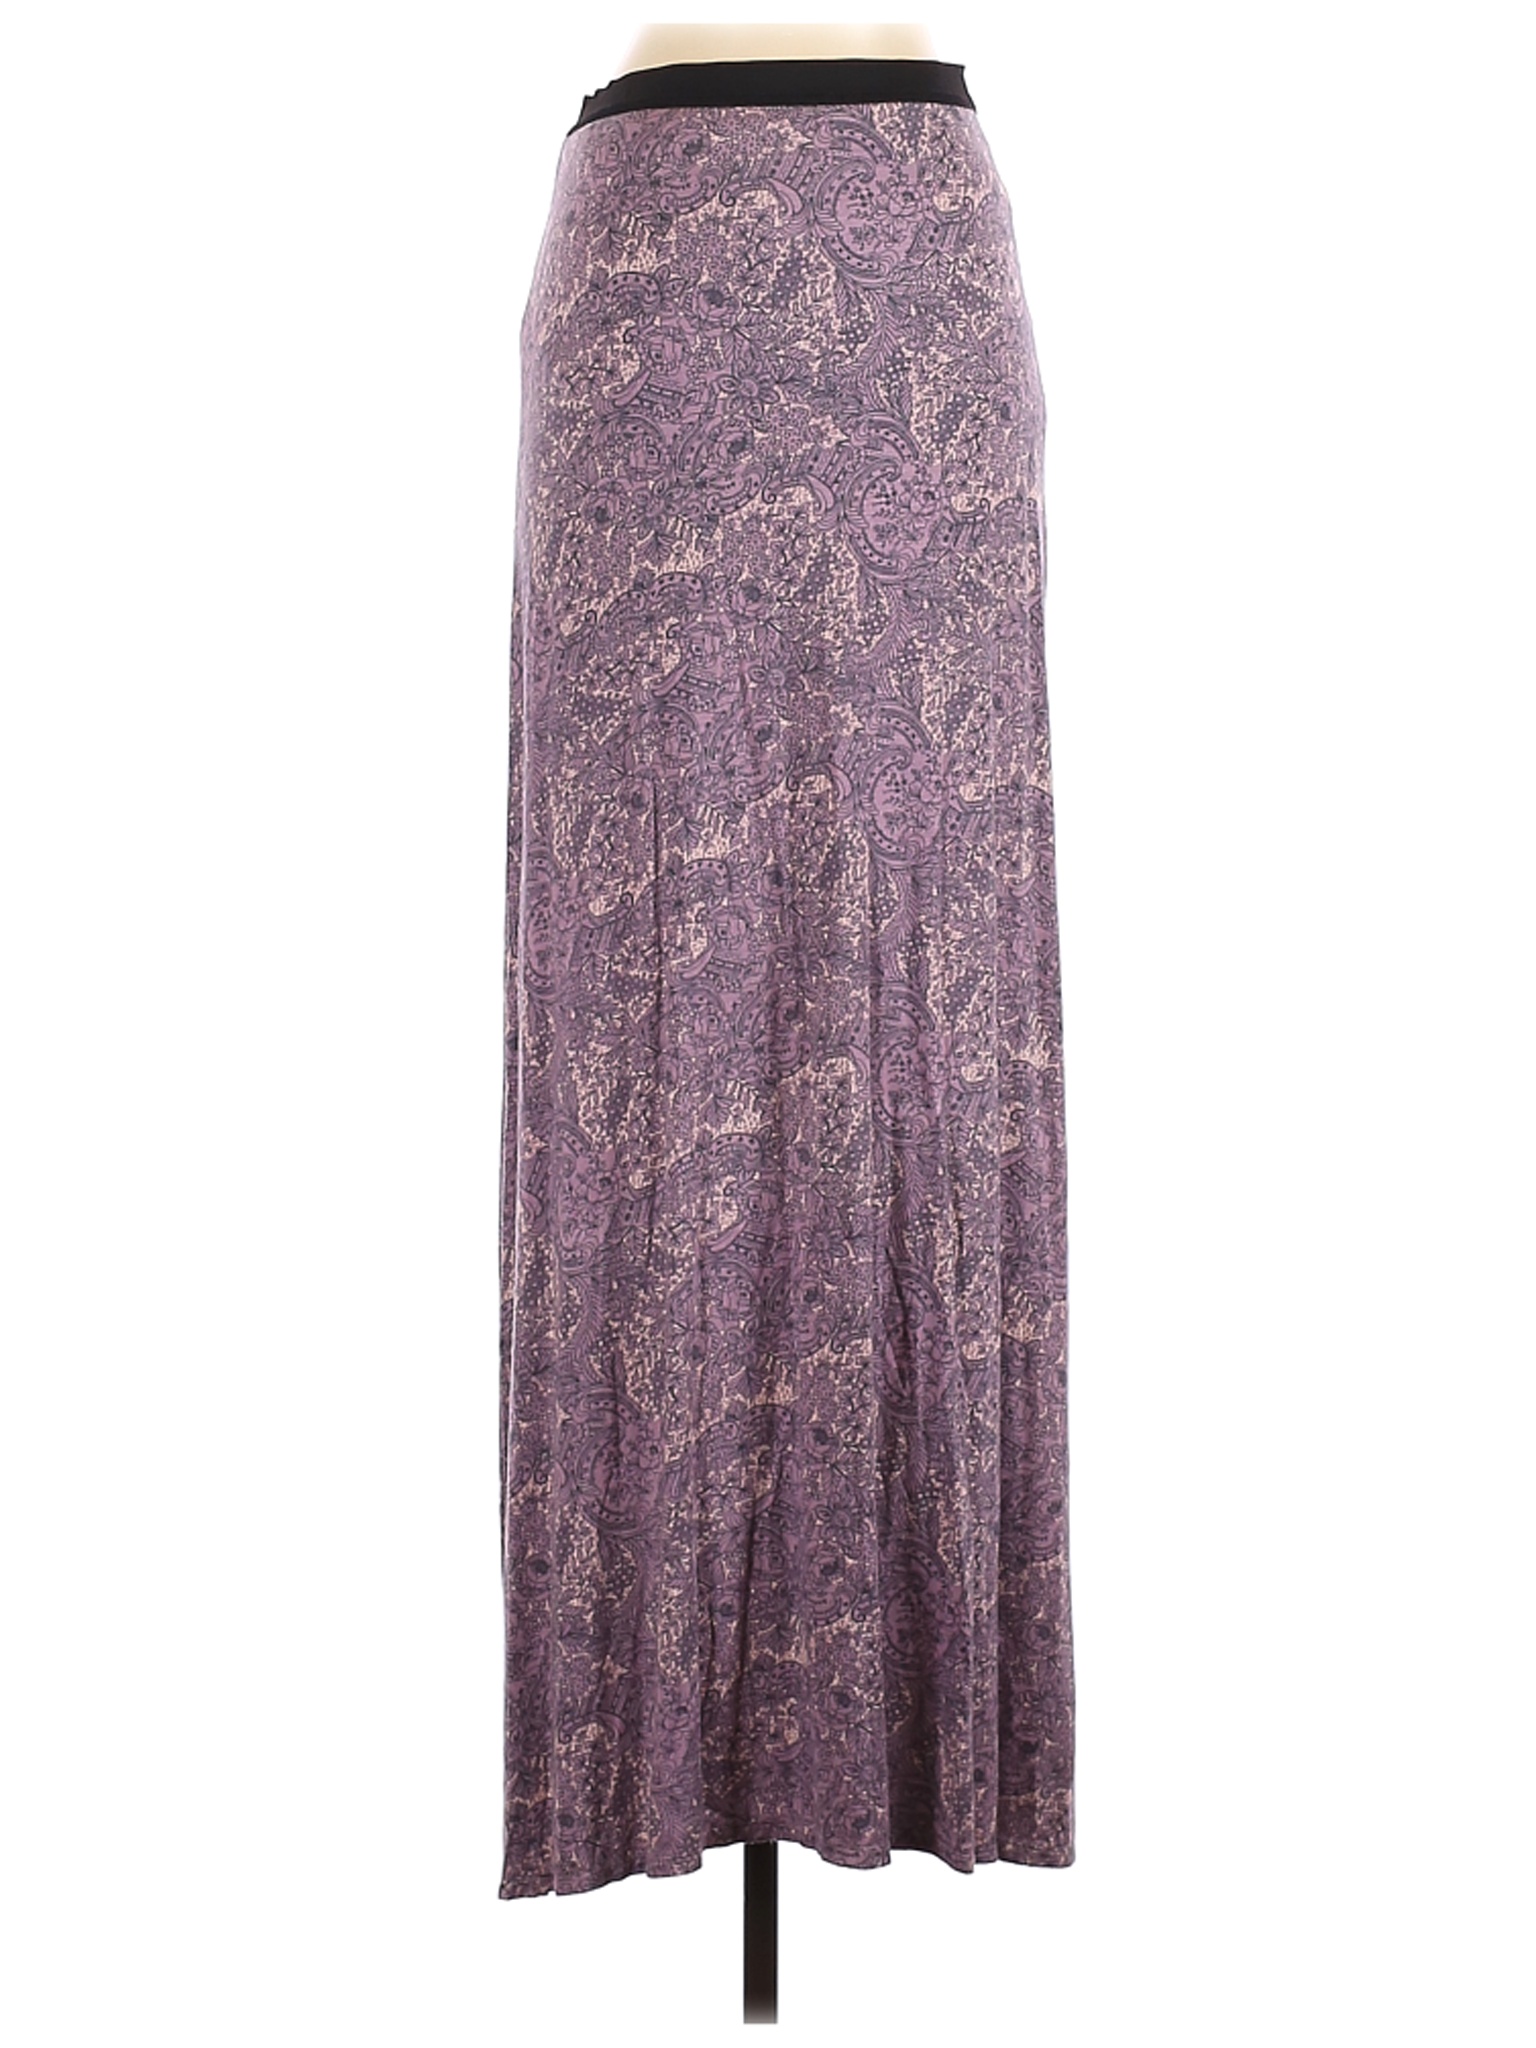 Free People Women Purple Casual Skirt XS | eBay